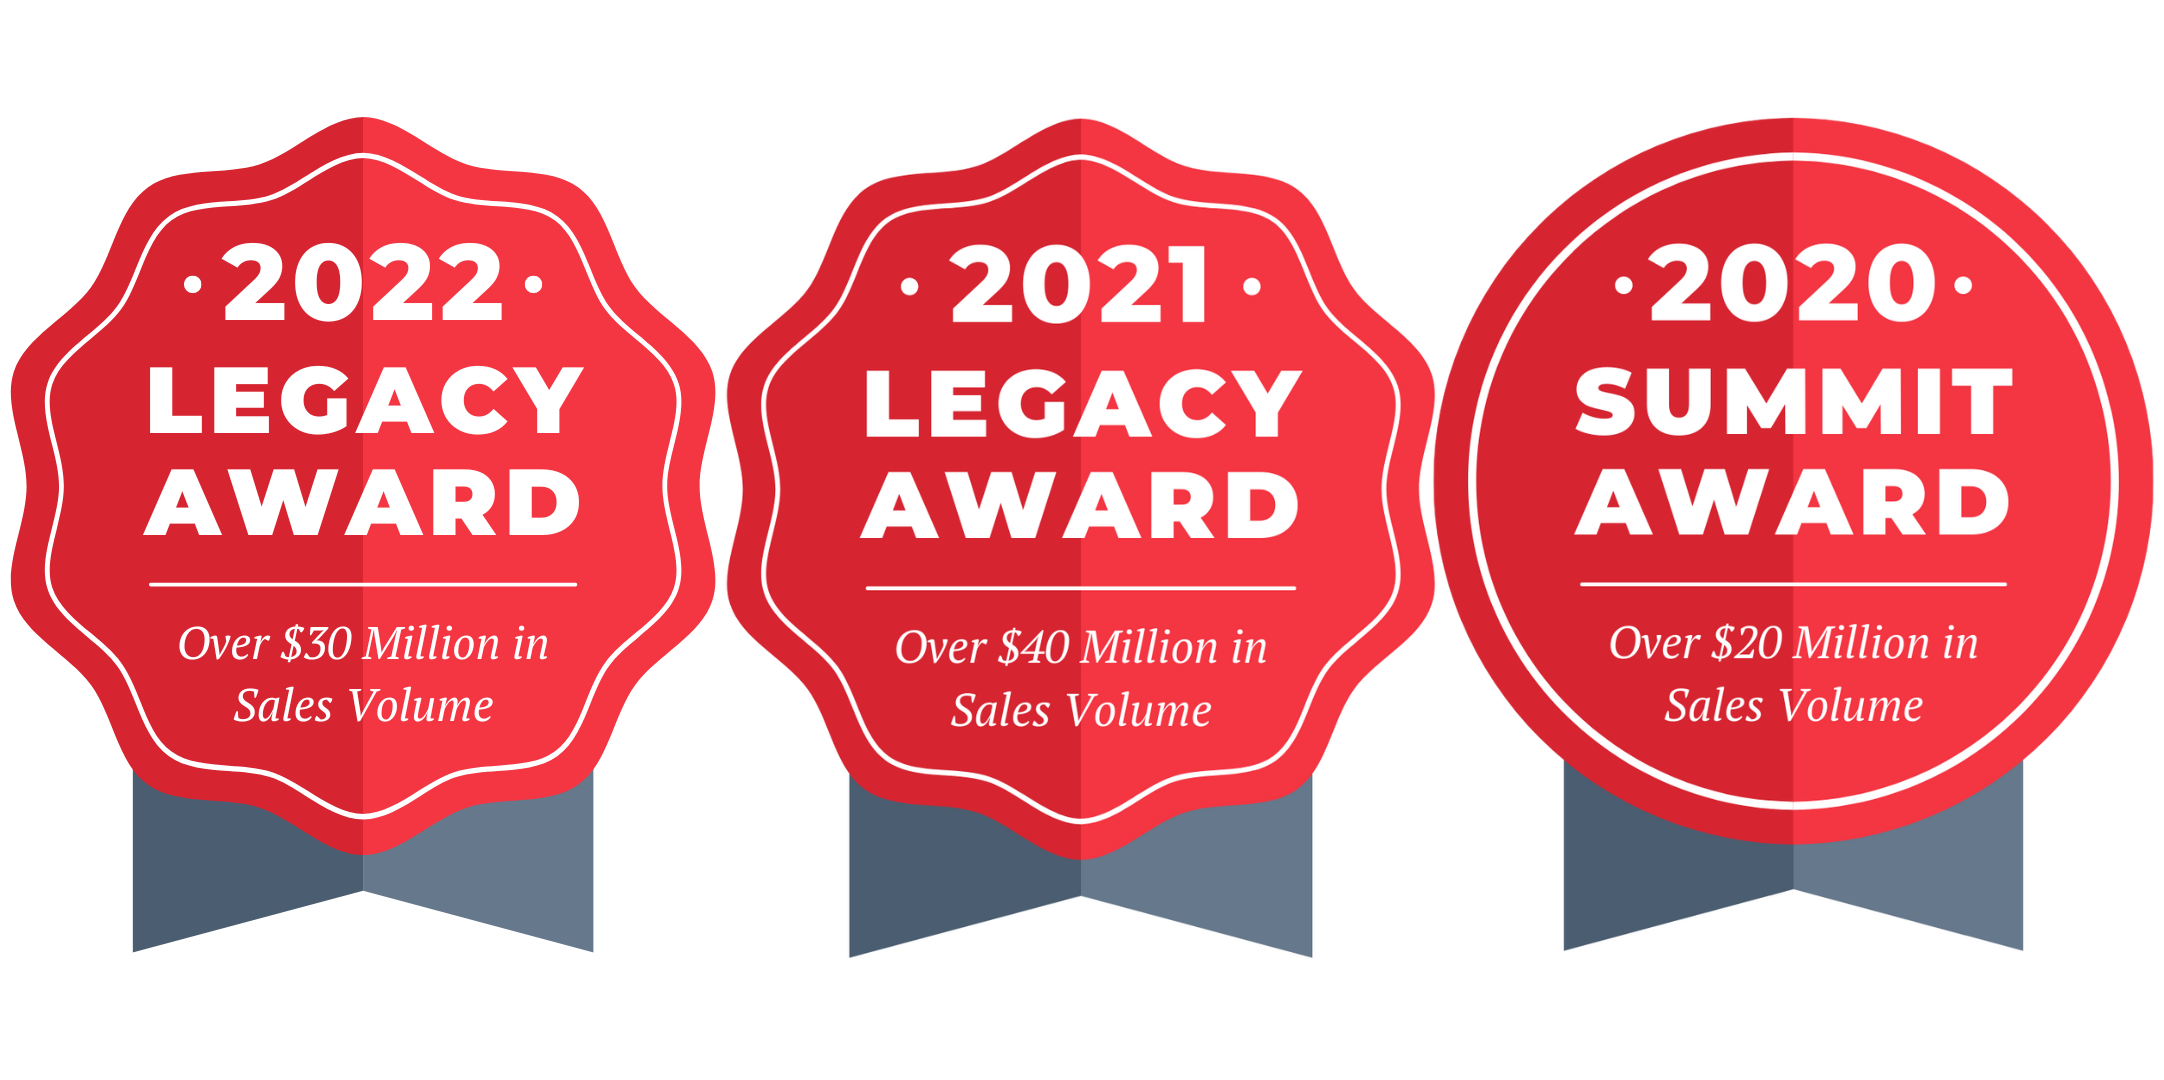 2022 Legacy Award, 2021 Legacy Award, 2020 Summit Award